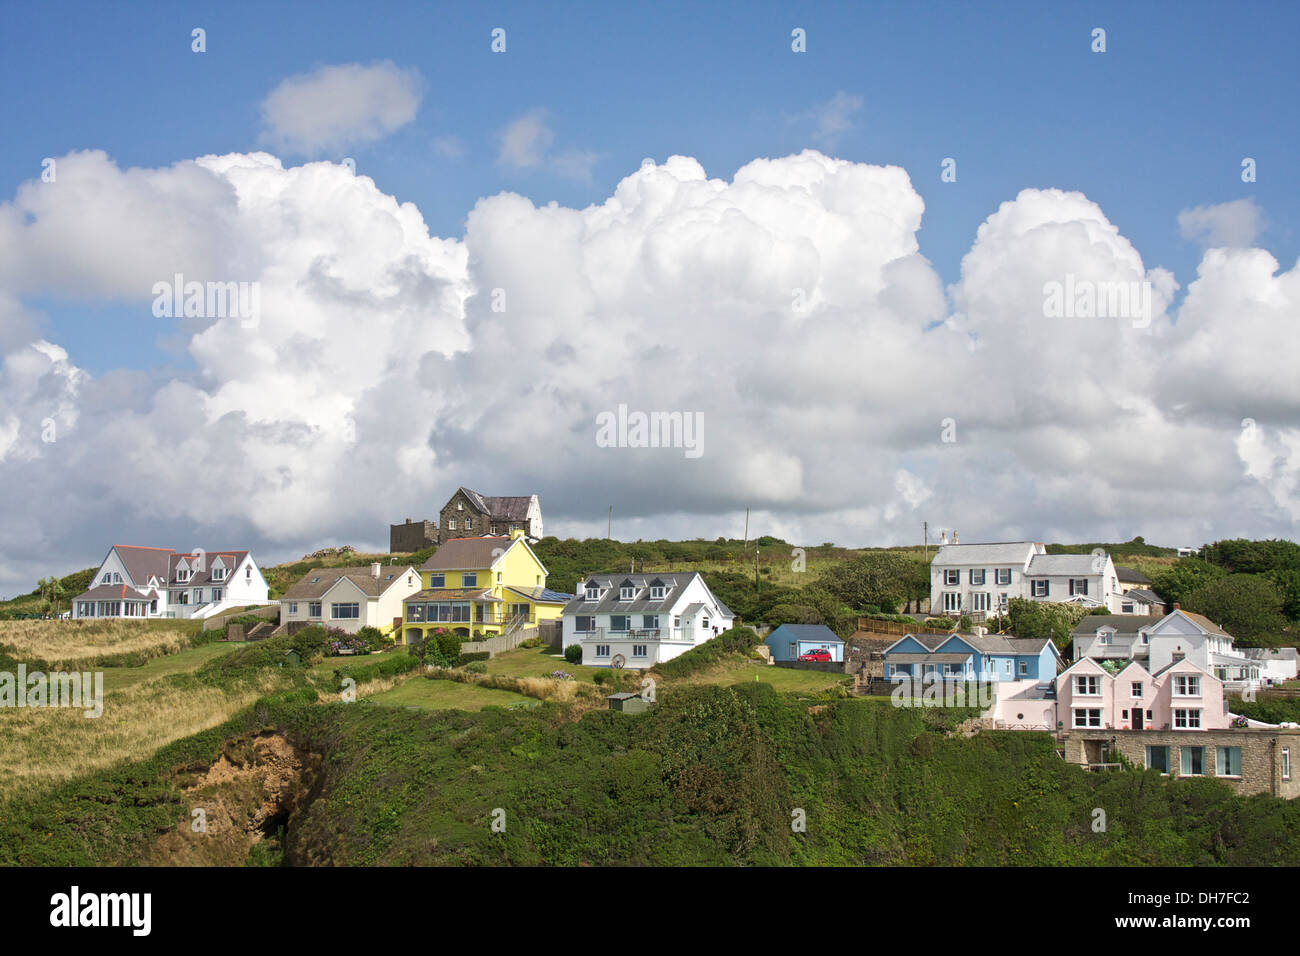 Dramatischen Wolkenformationen über dem Dorf befindet sich auf einem Hügel. Stockfoto